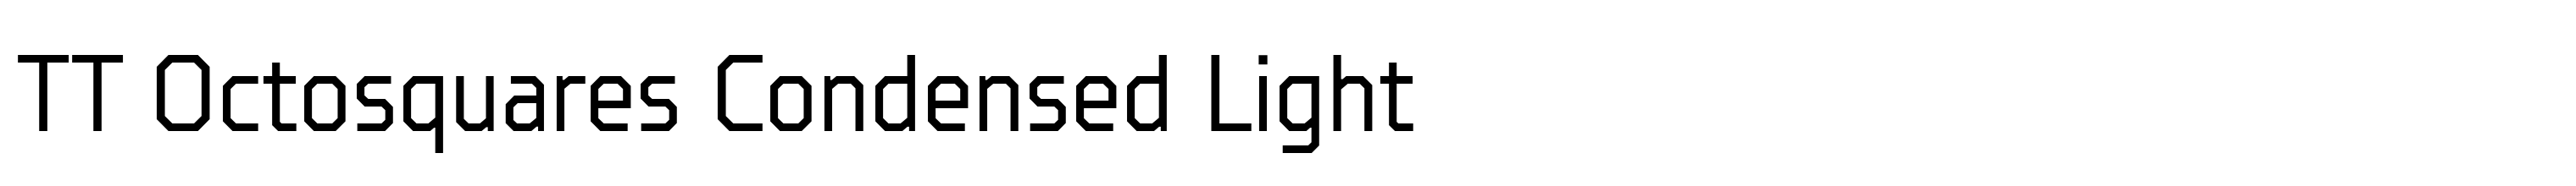 TT Octosquares Condensed Light